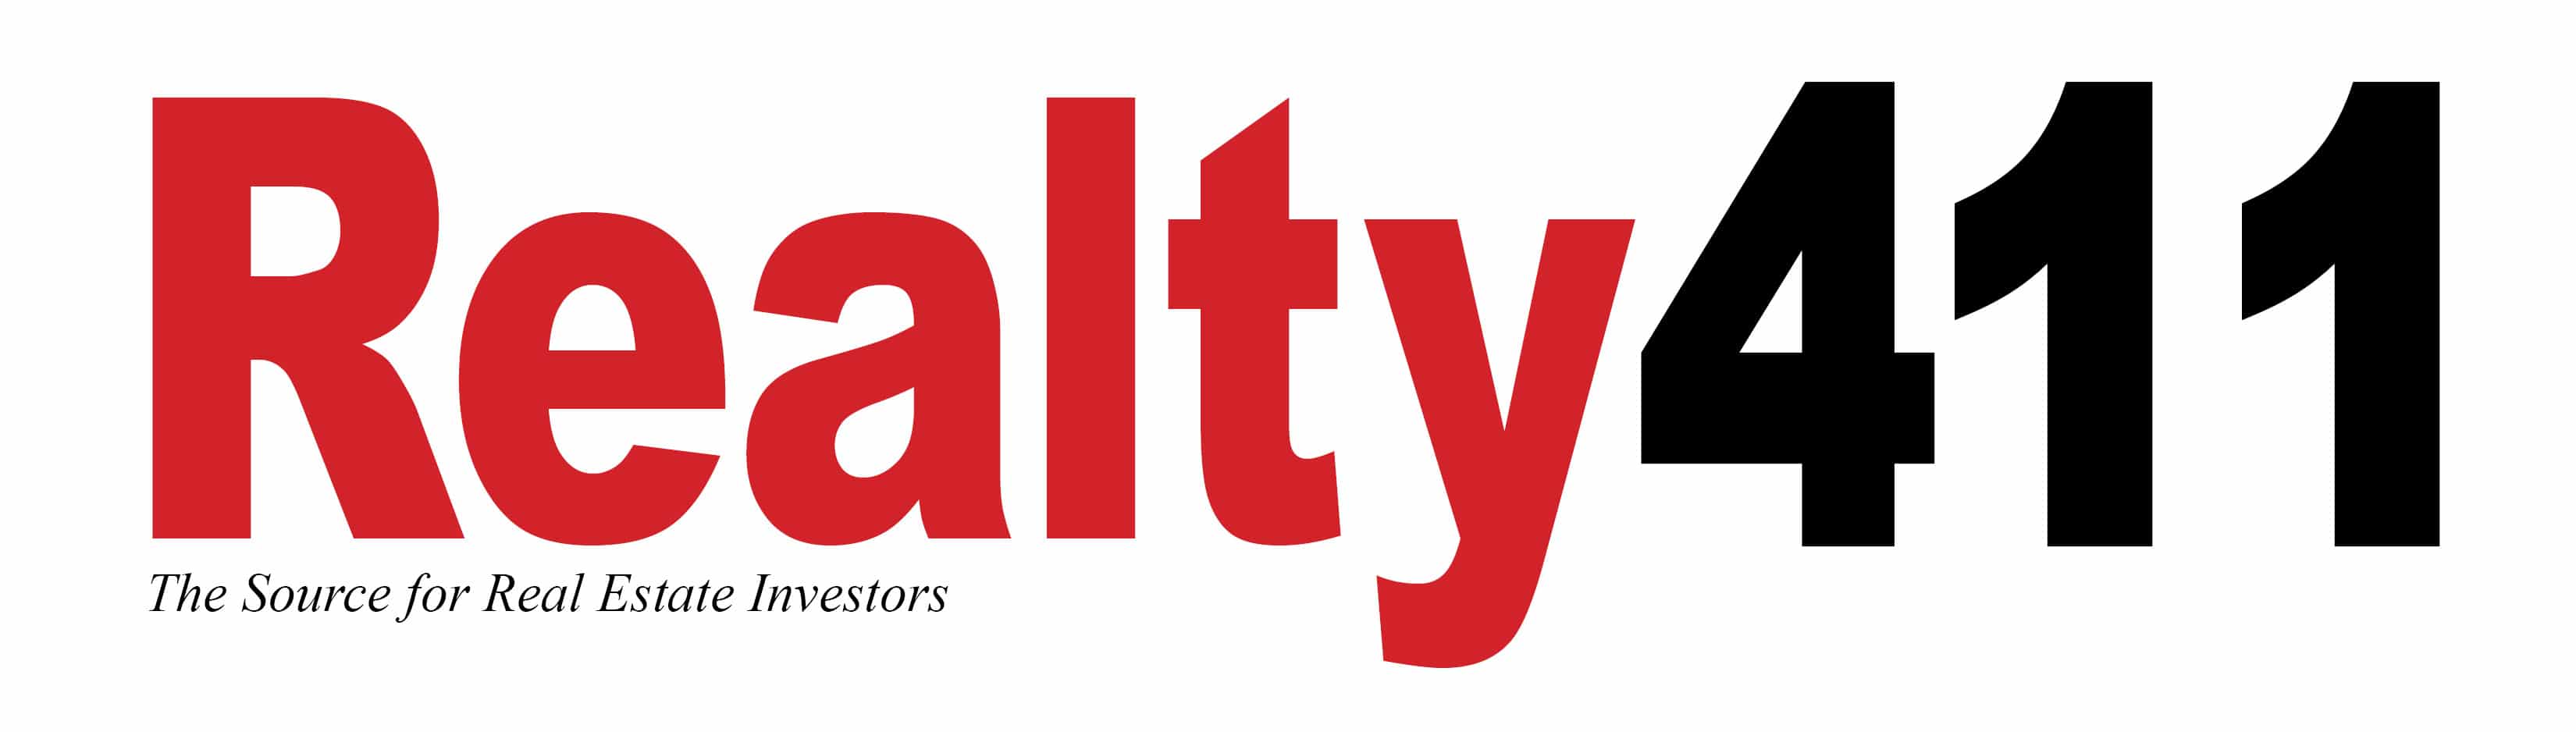 Realty 411 logo